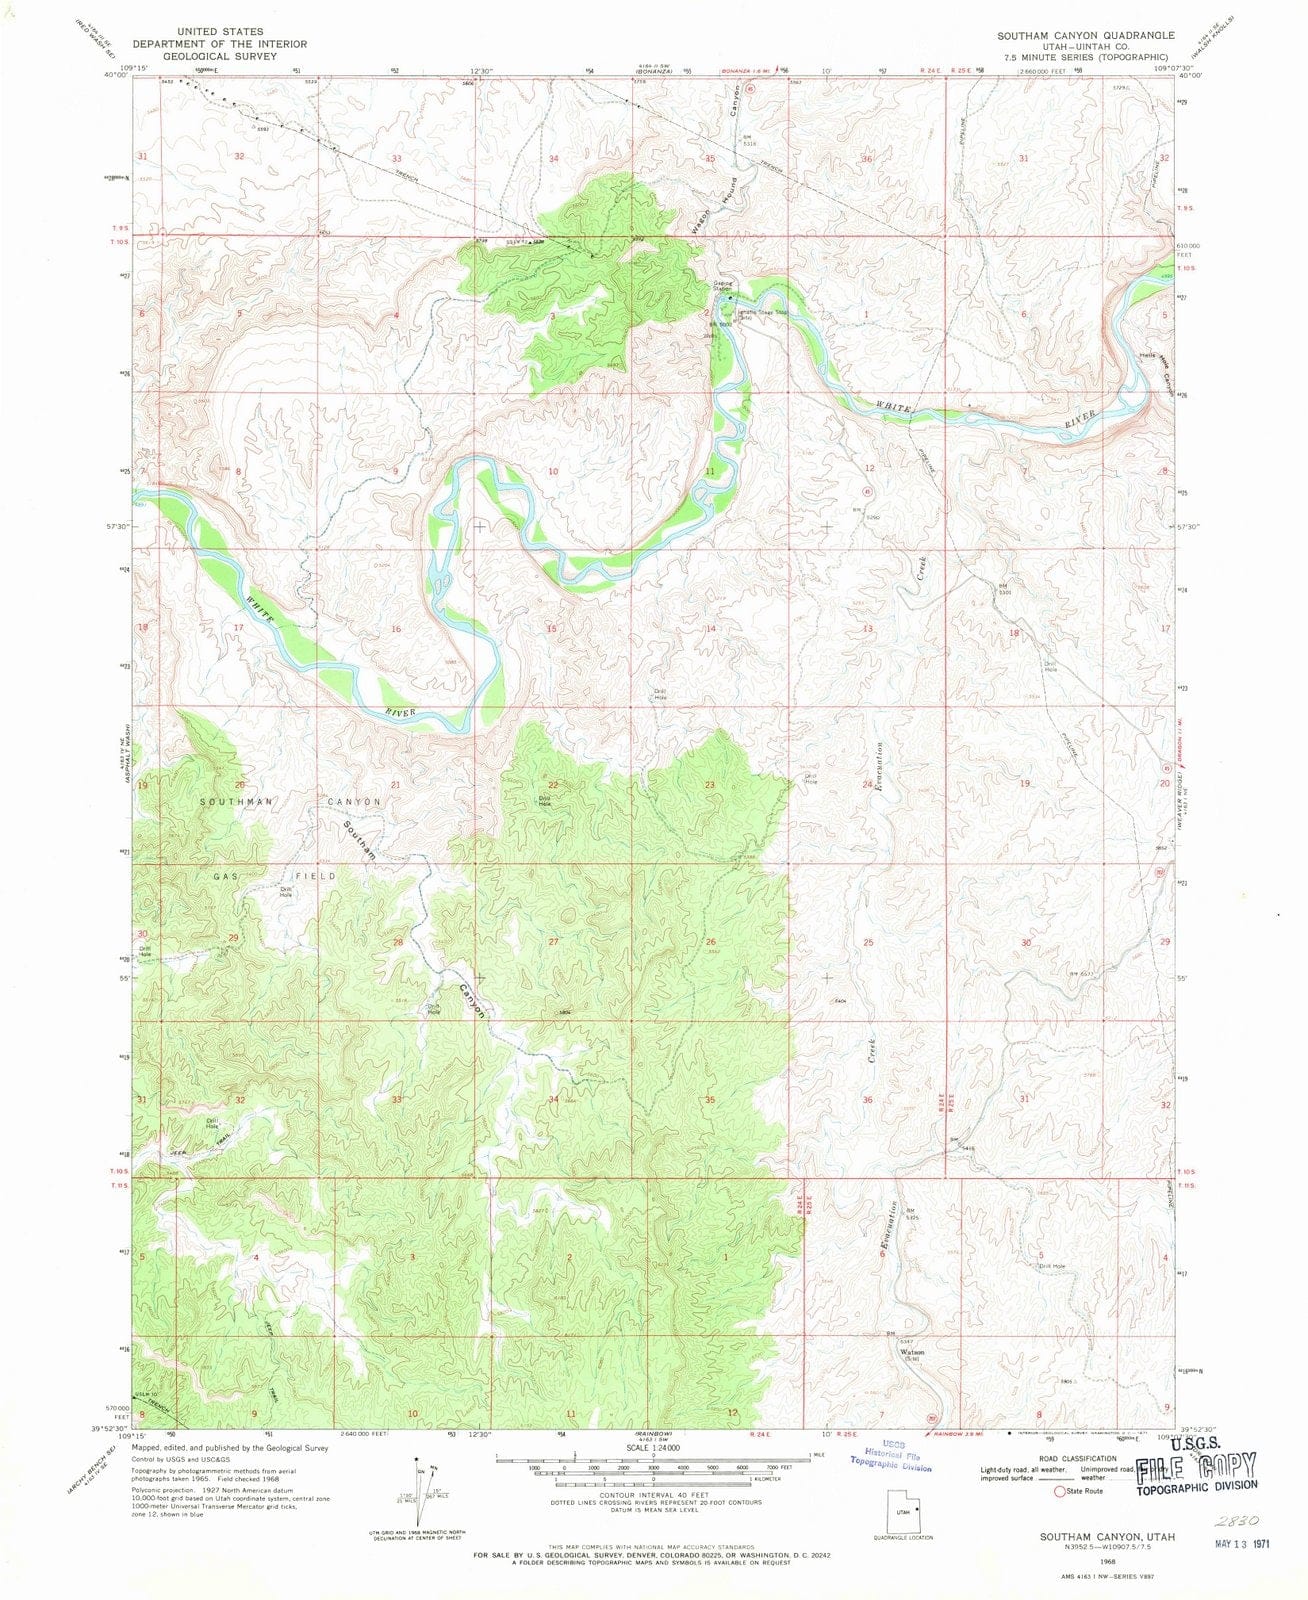 1968 Southam Canyon, UT - Utah - USGS Topographic Map